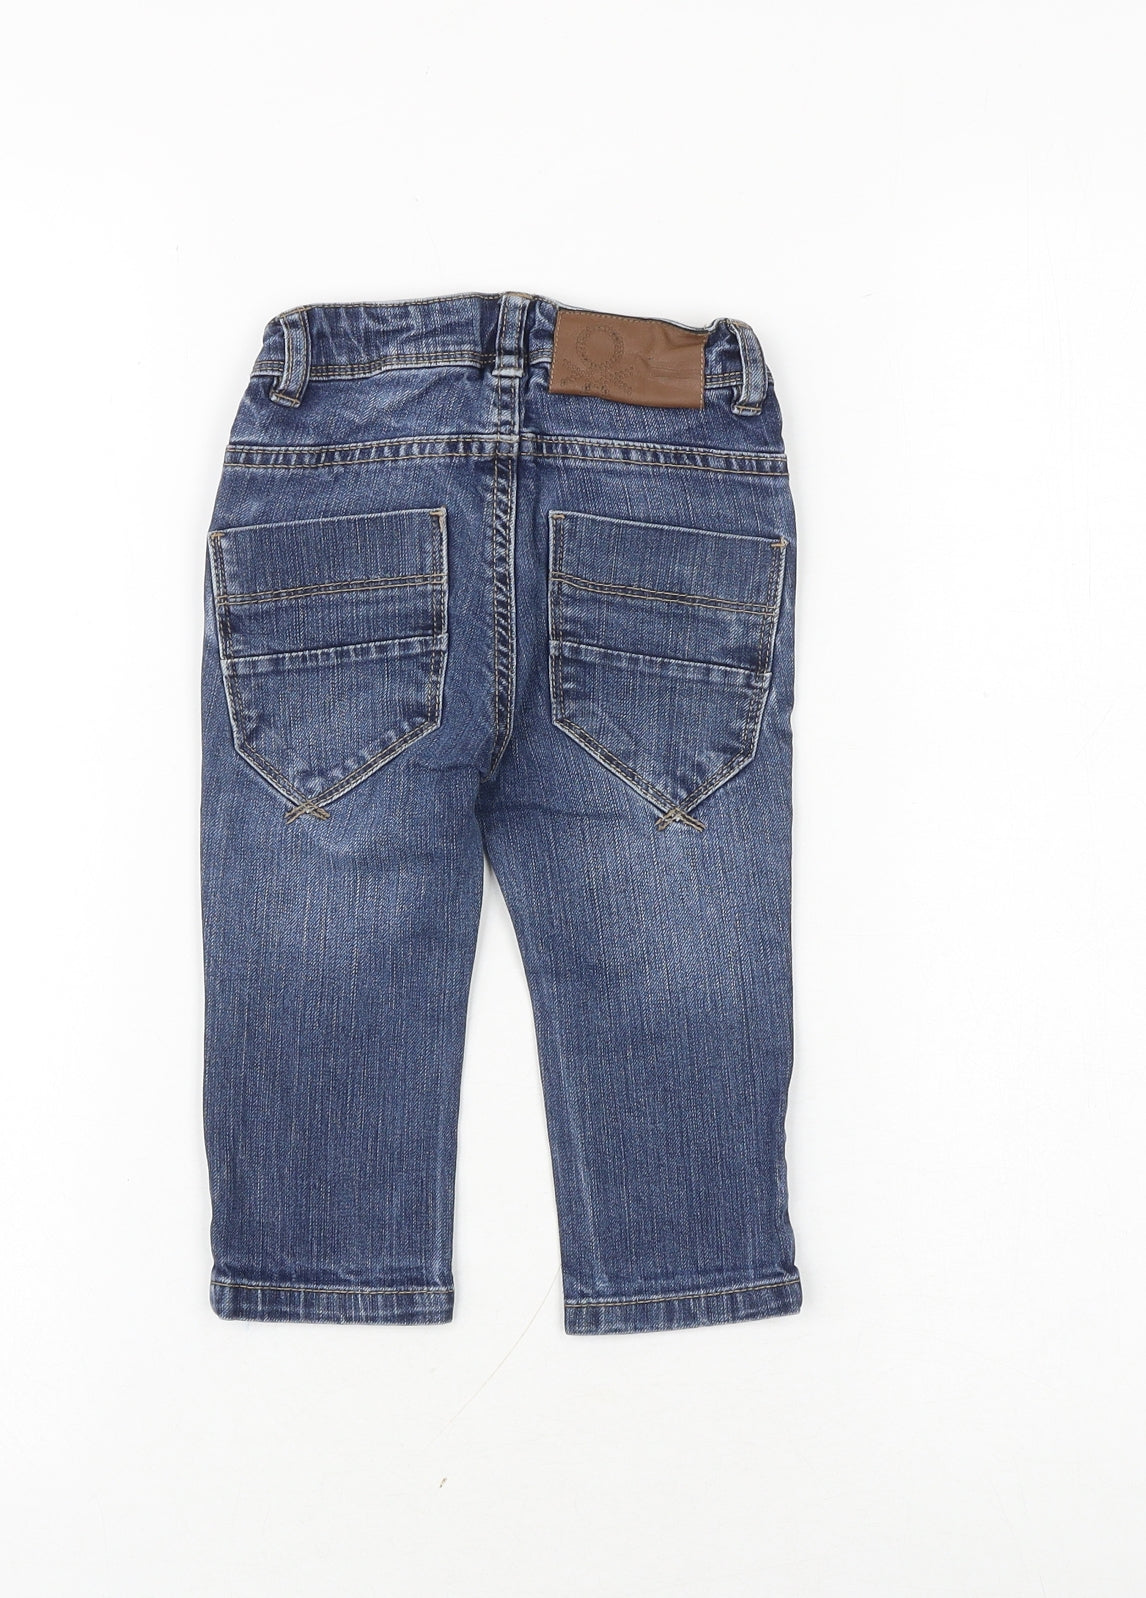 United Colors of Benetton Baby Blue Cotton Capri Jeans Size 12-18 Months Zip